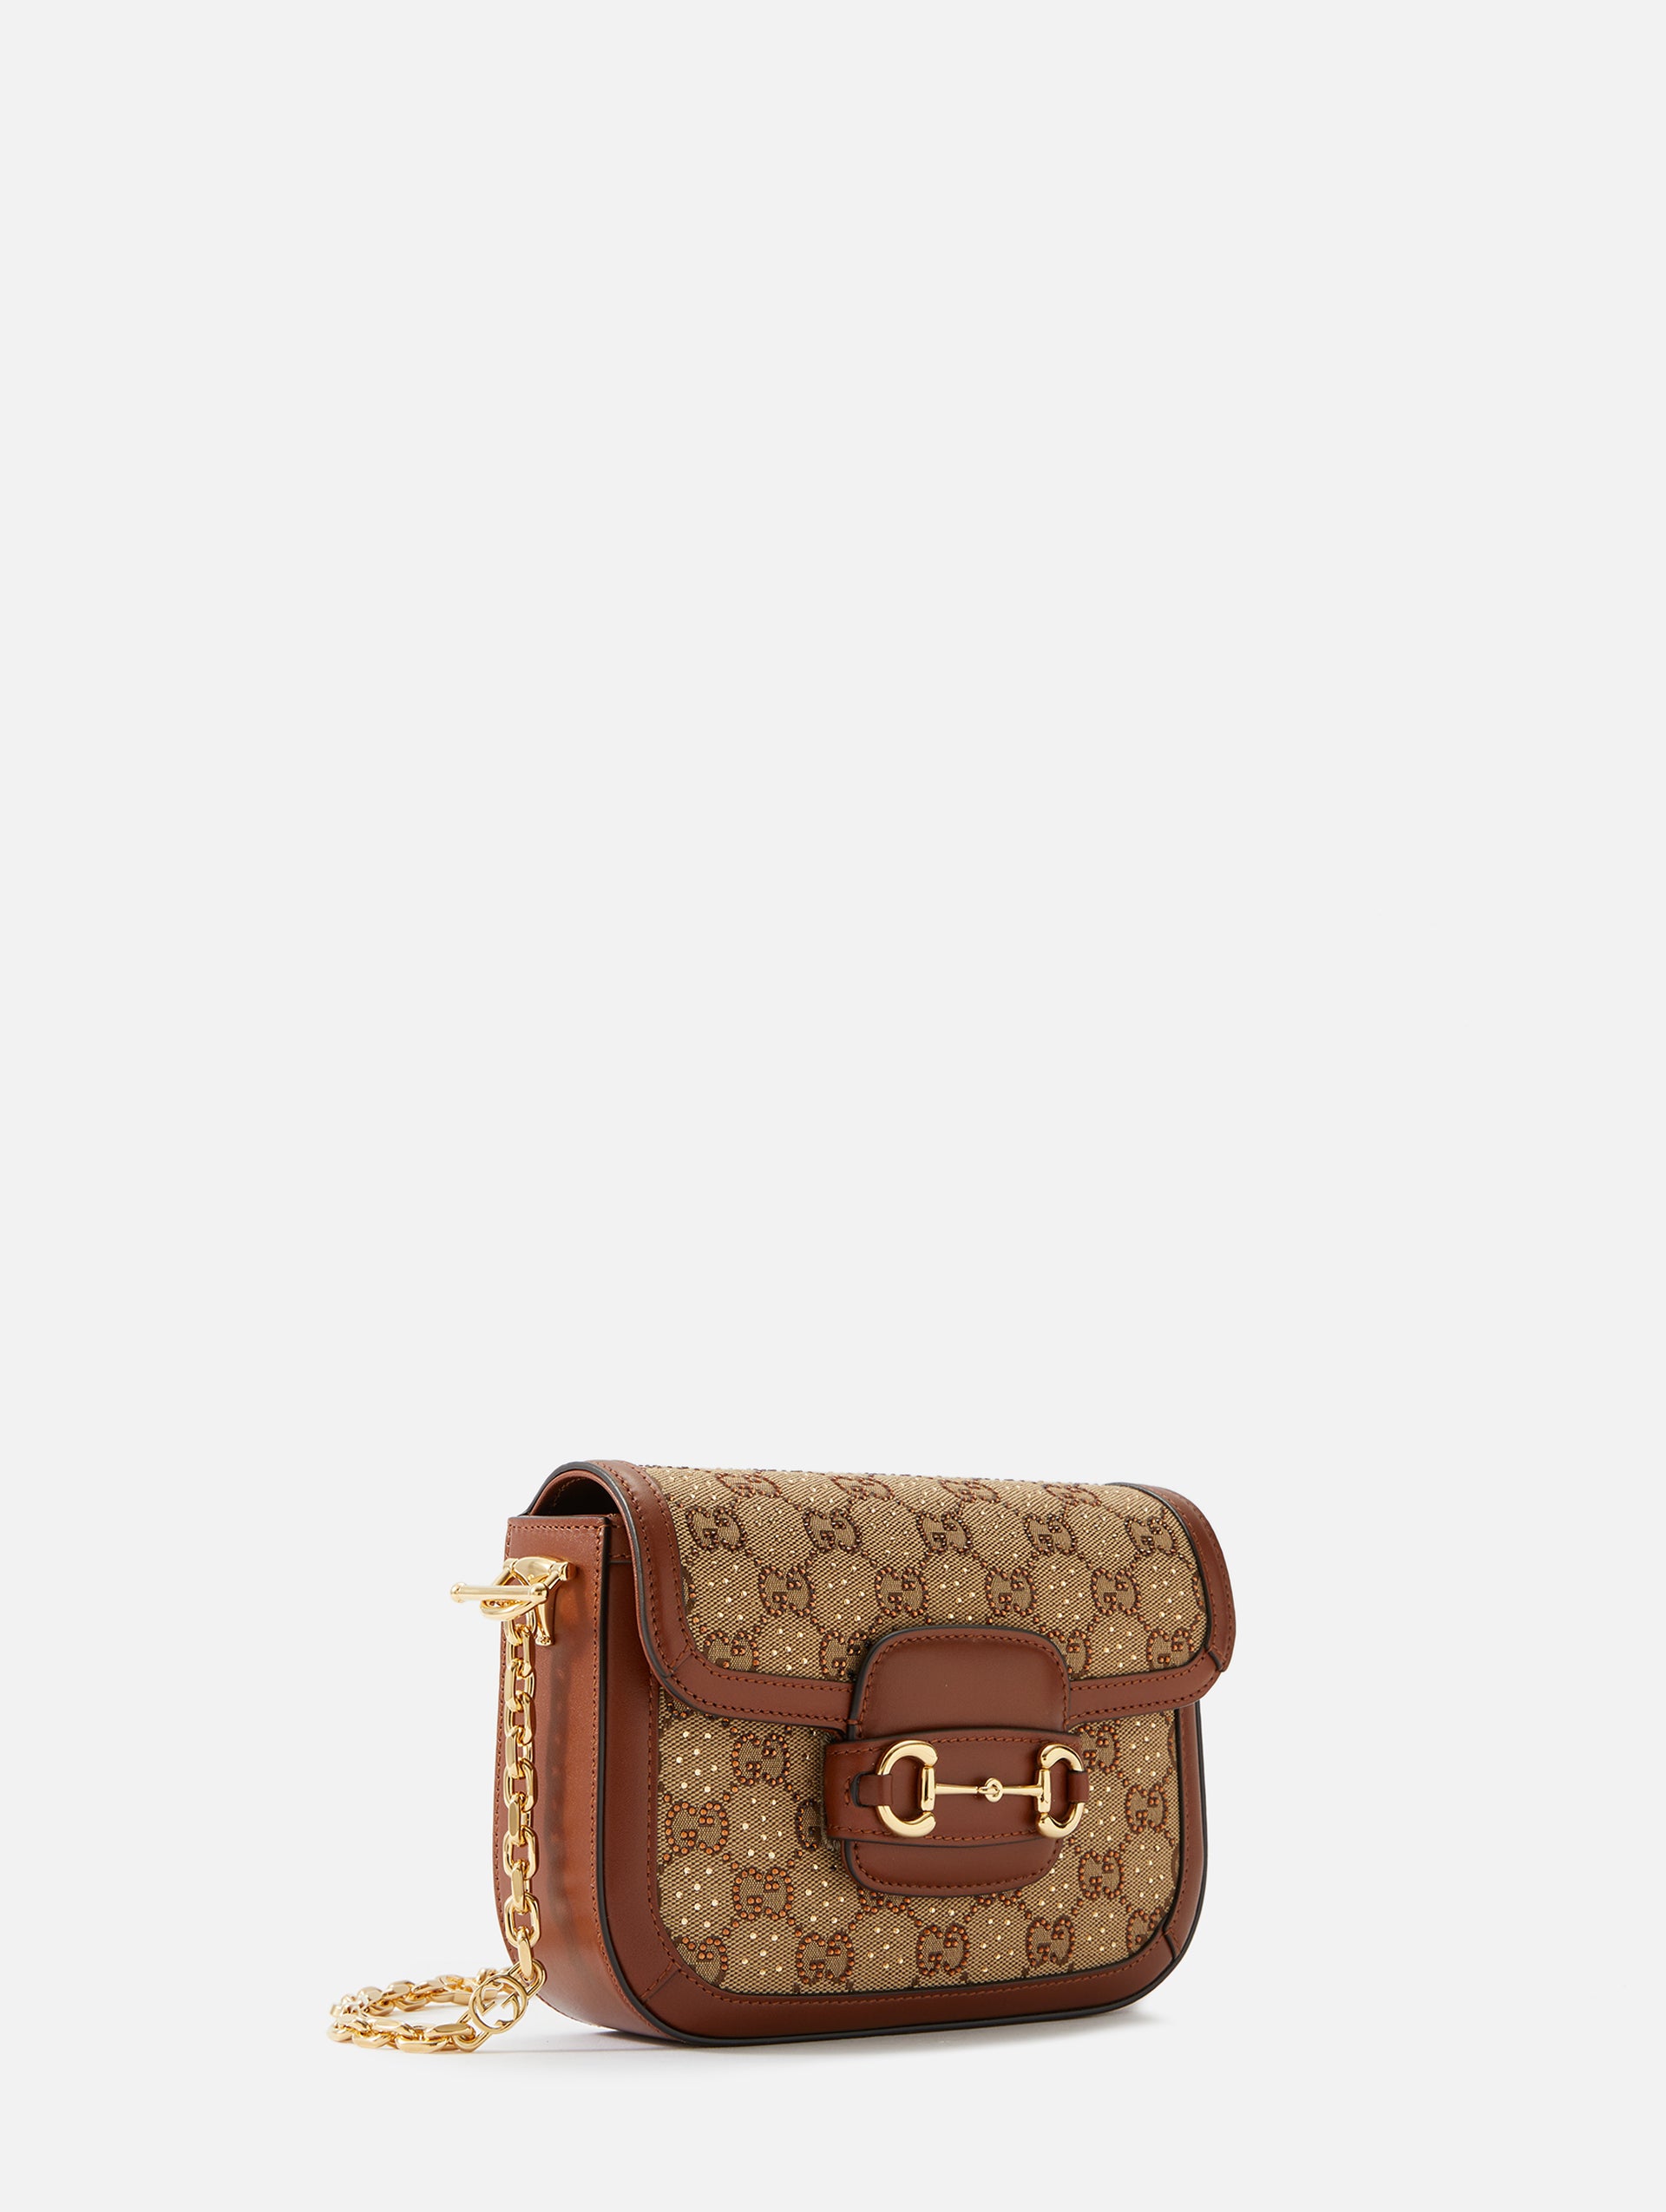 Gucci Gucci Horsebit 1955 Small canvas crossbody bag | MILANSTYLE.COM